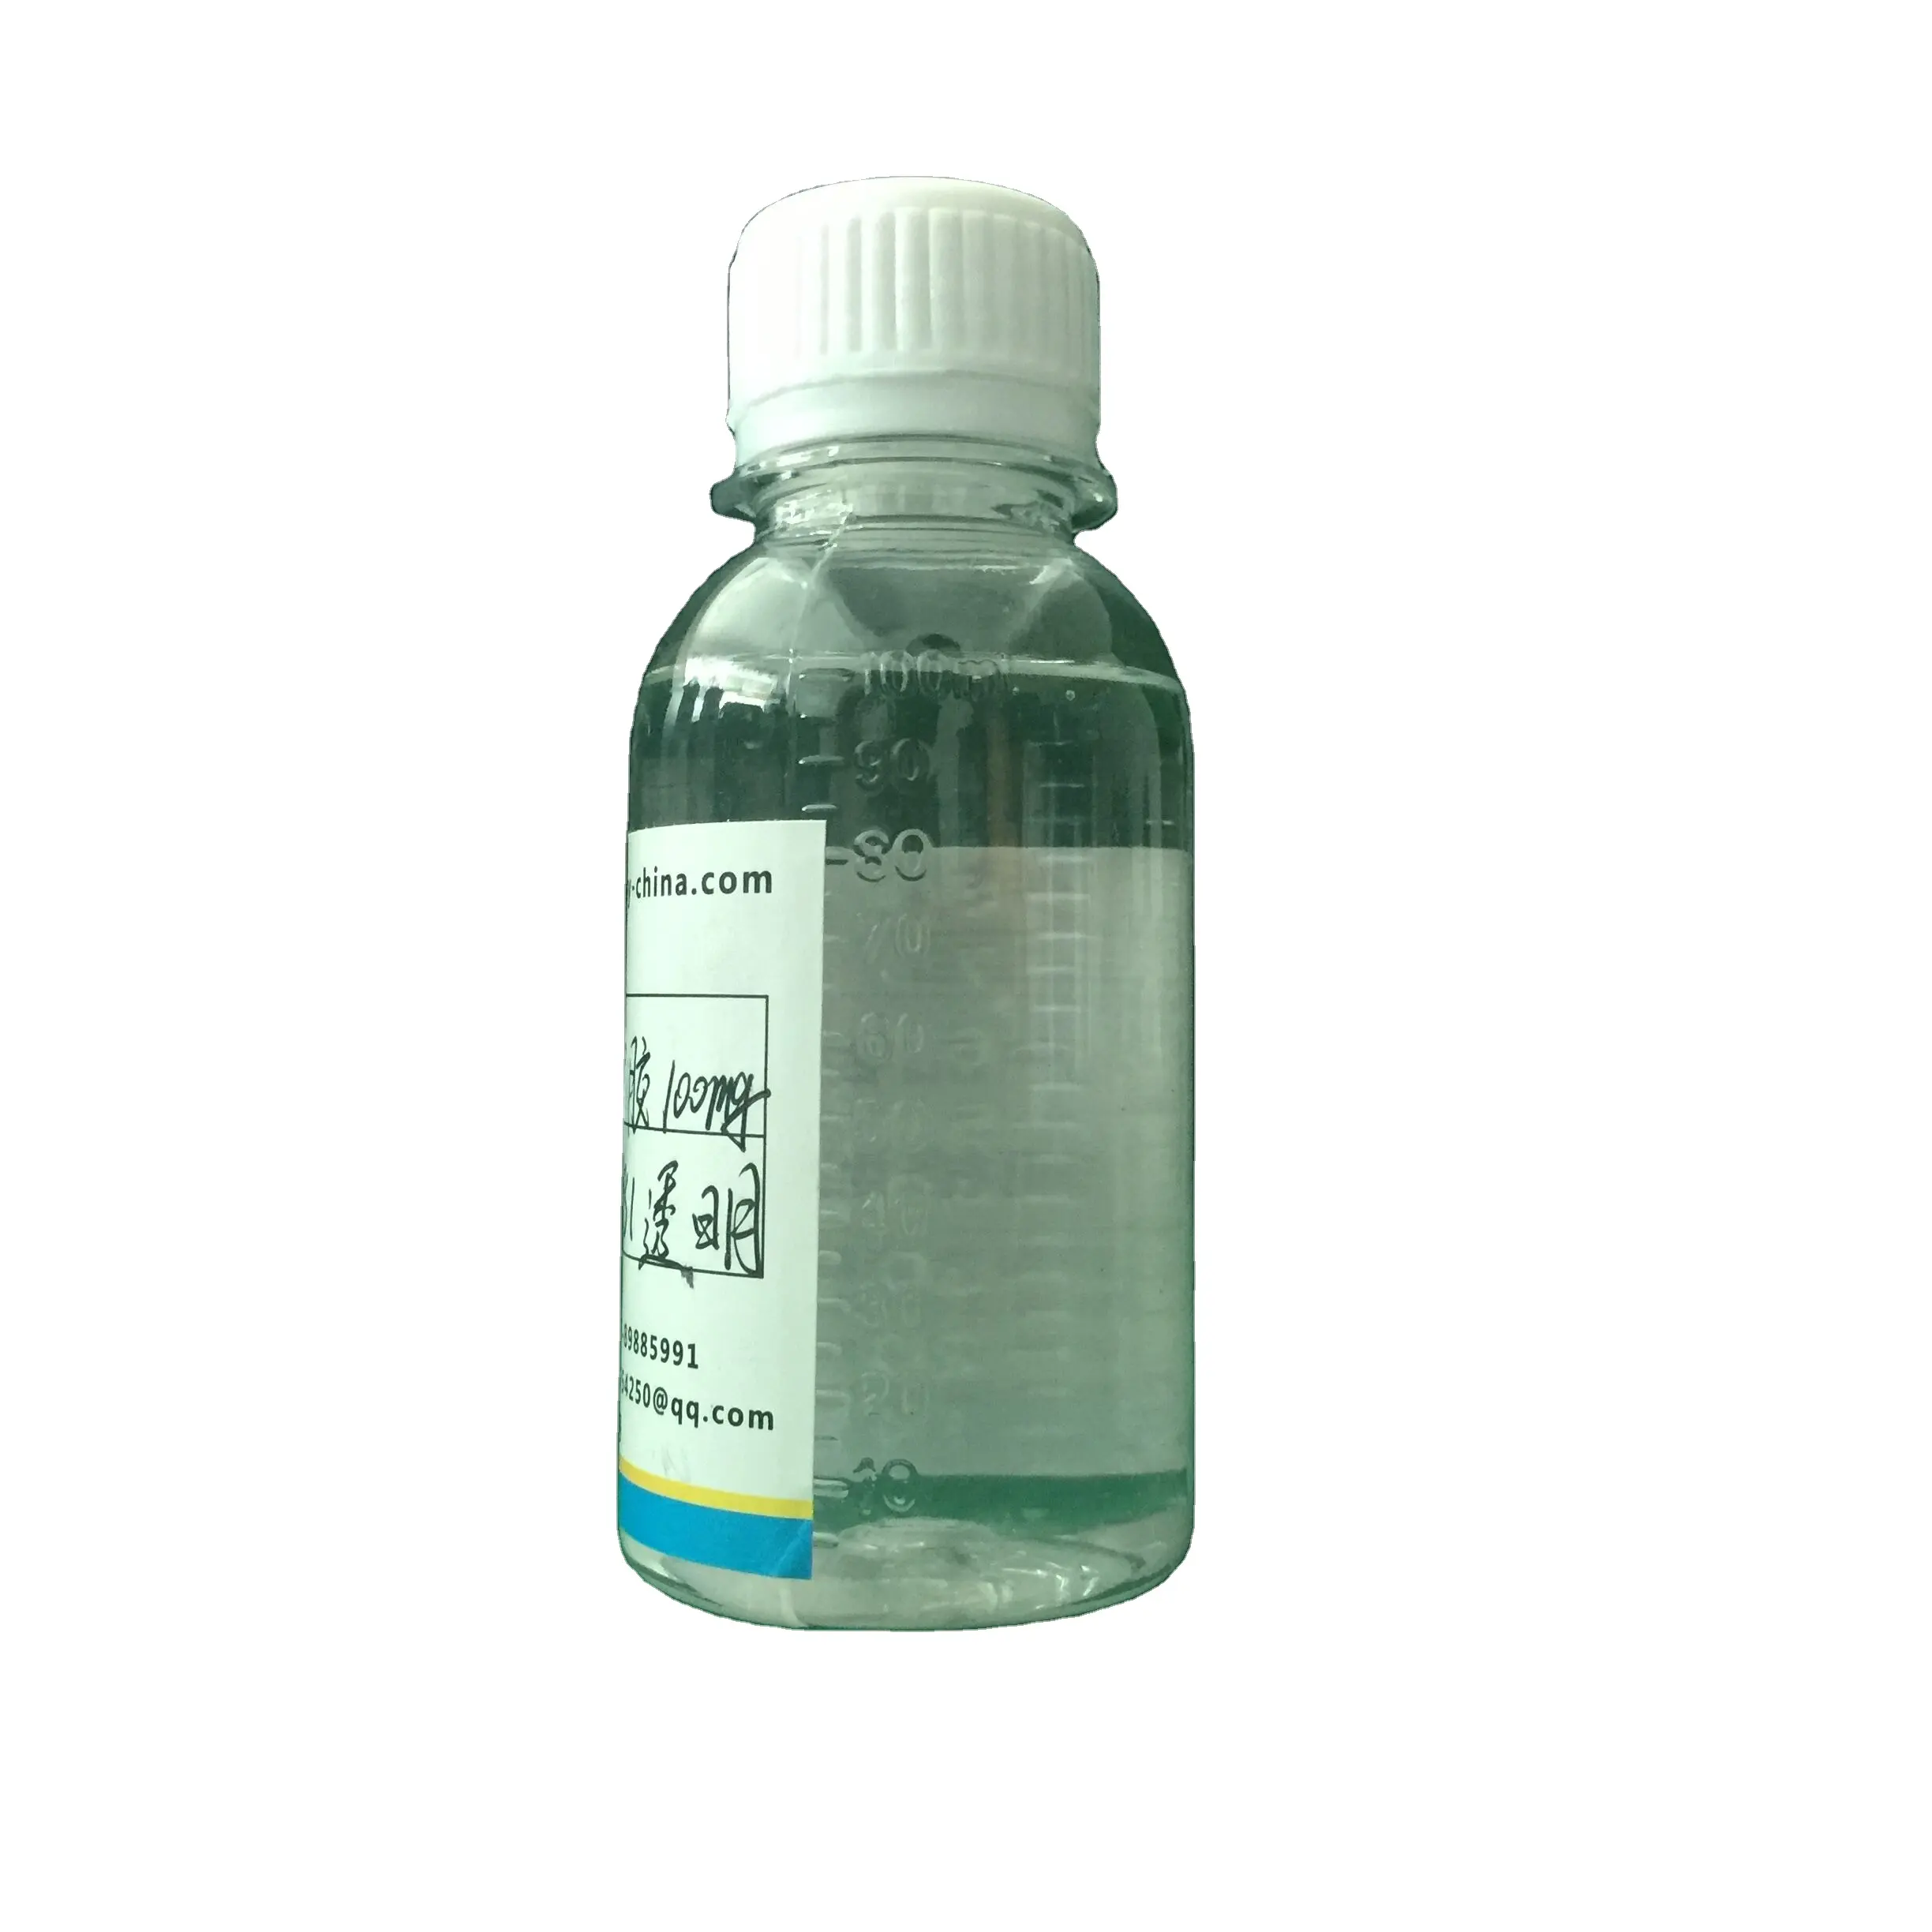 Dioxide Aqueous Solution Transparent Liquid 10 30 Liquid Titanium for Cosmetics Nano Titanium Dioxide Price Per Kg Tio2 0.5 0.1